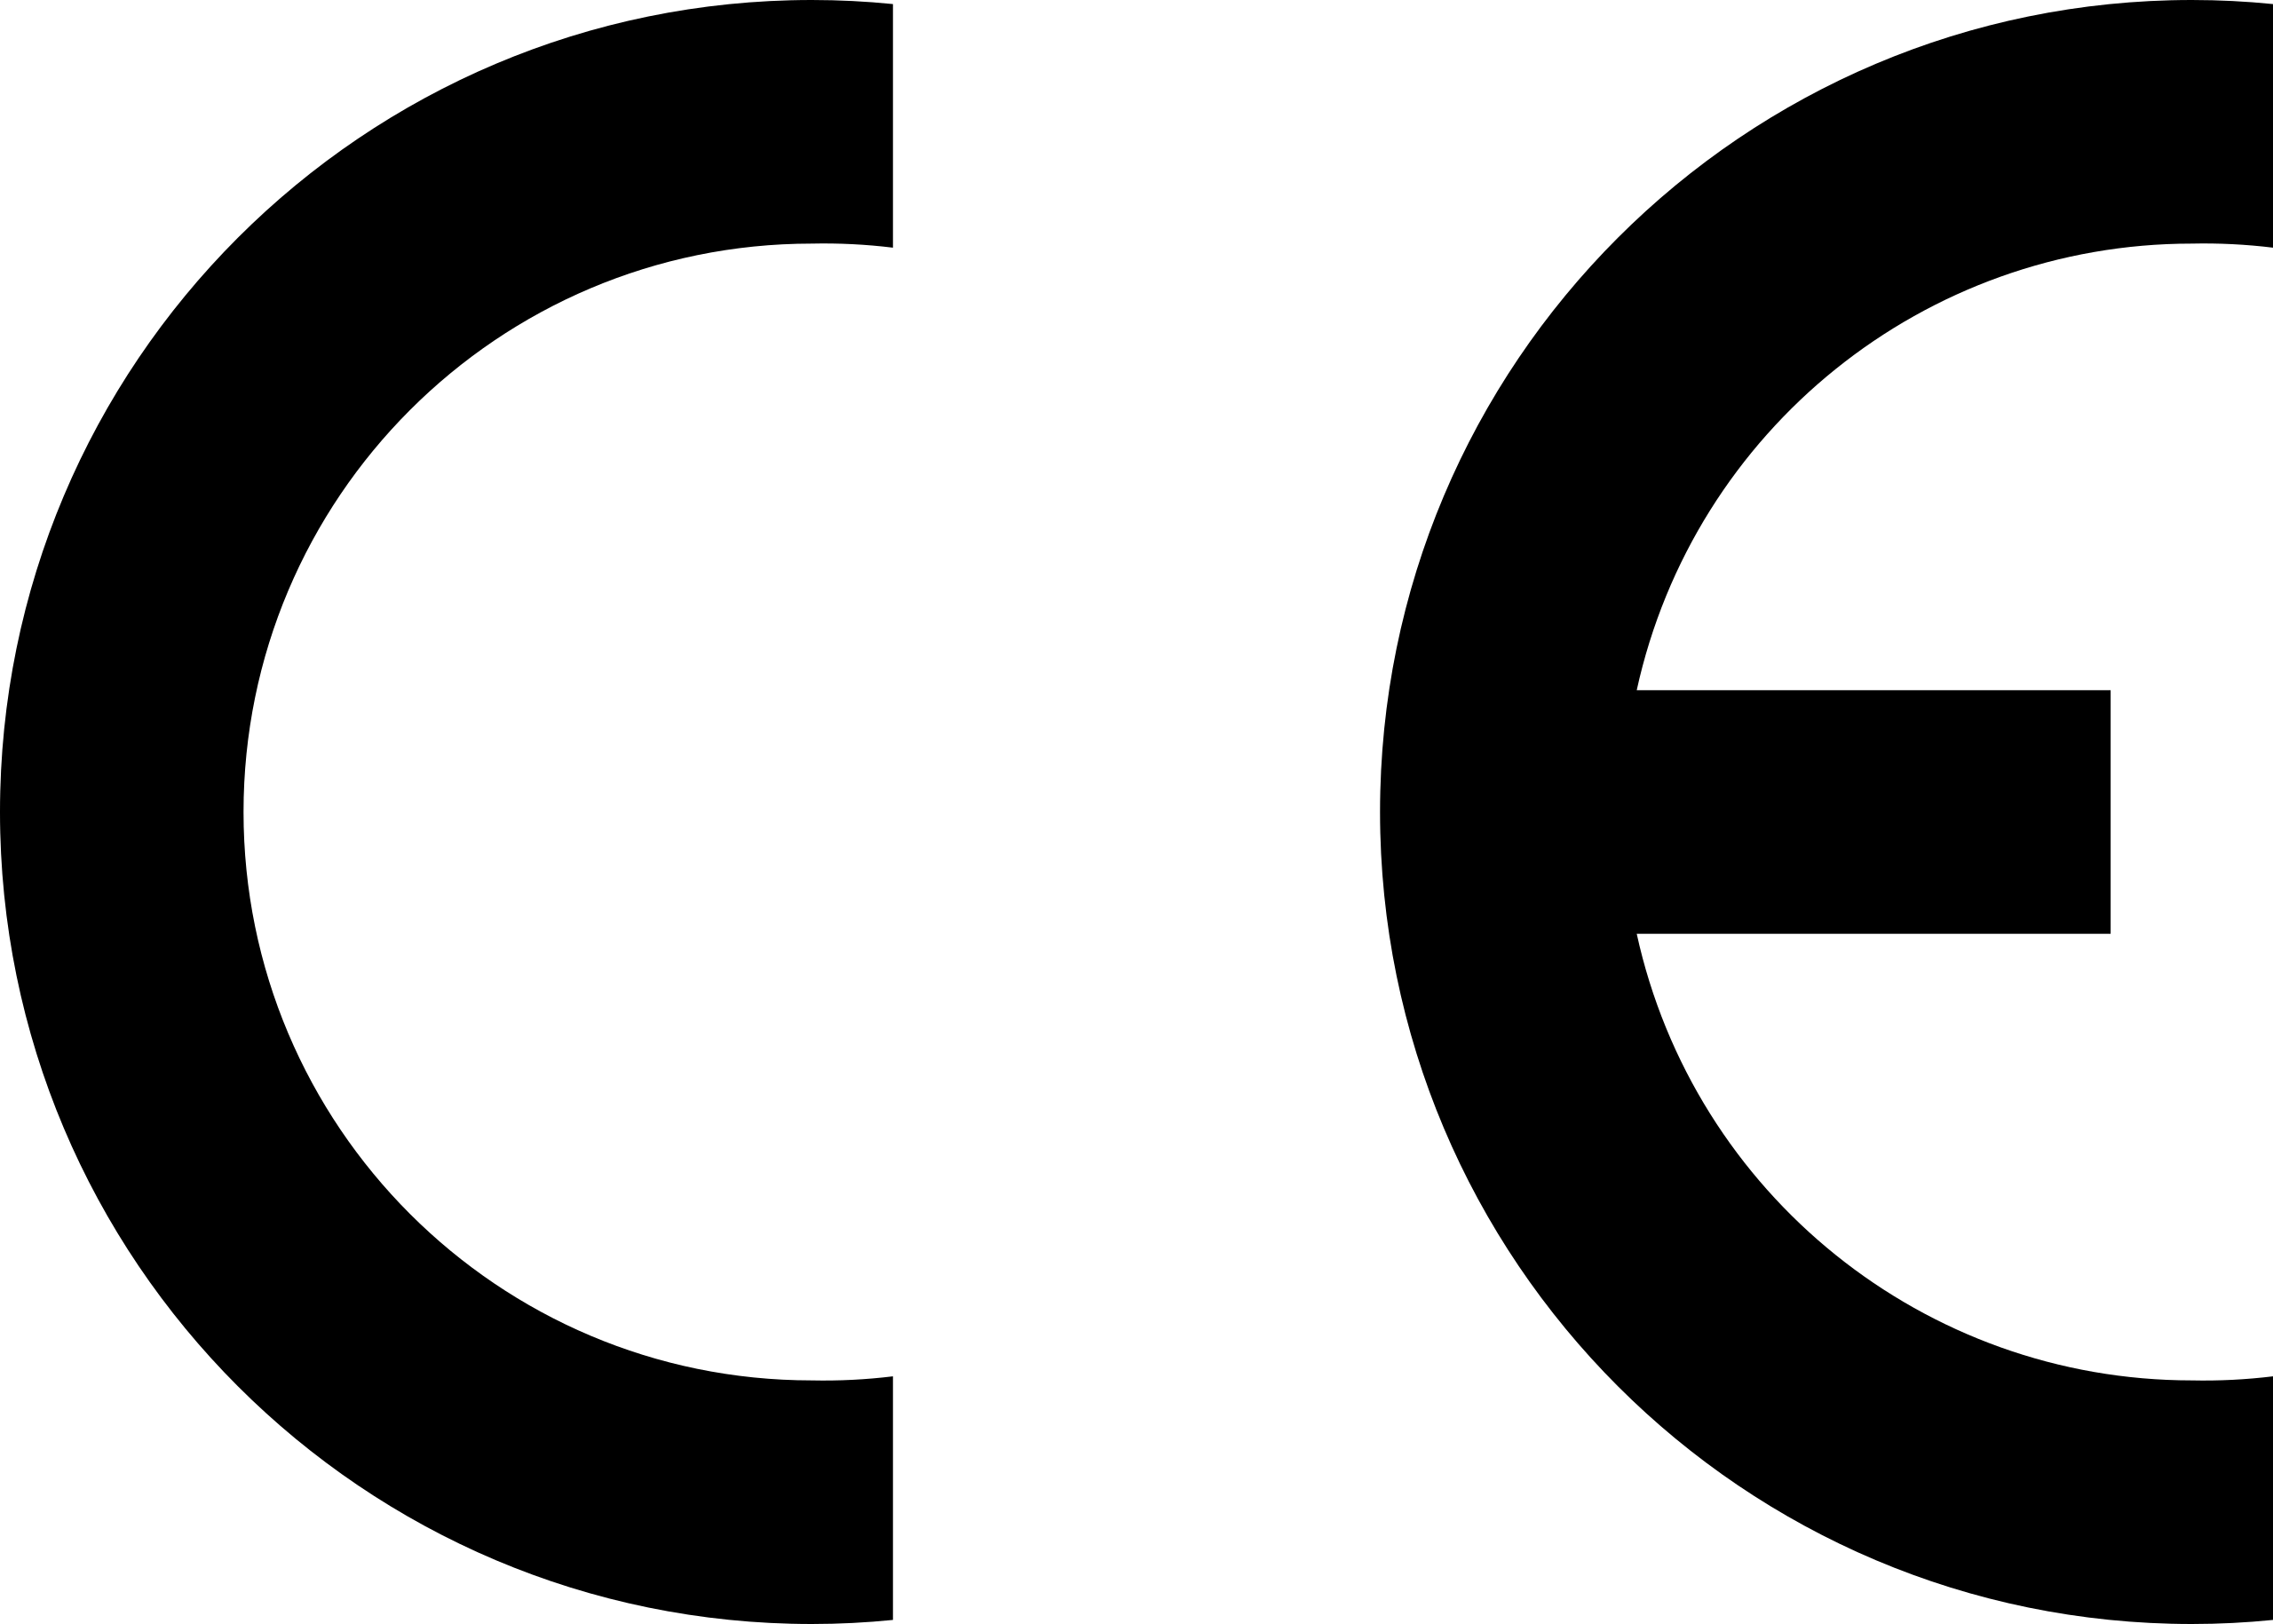 2560px-Conformité_Européenne_(logo).svg